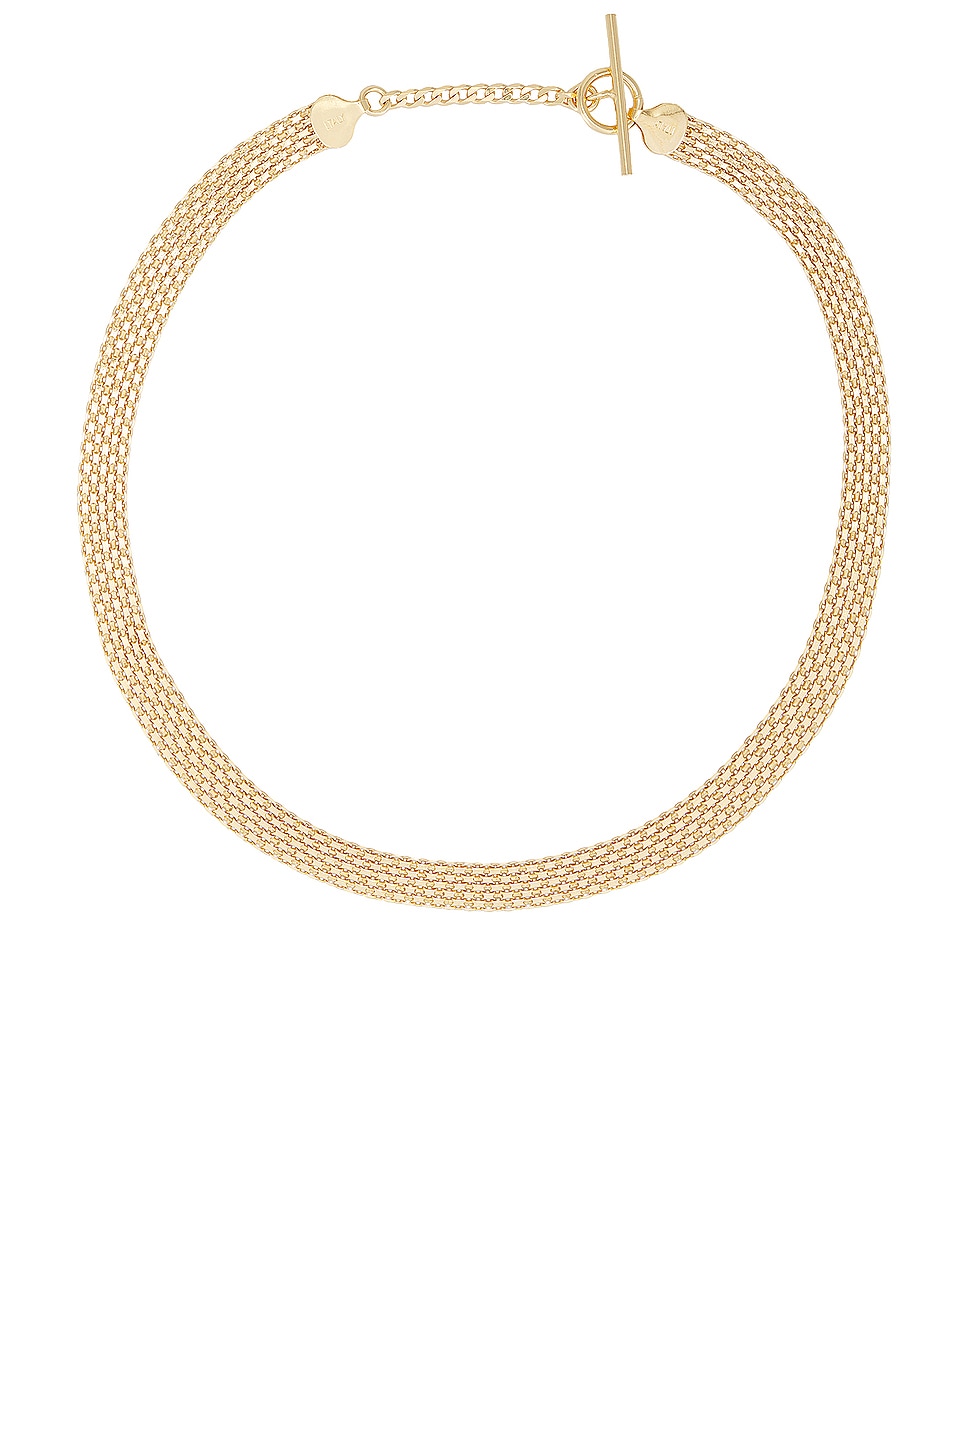 Image 1 of Loren Stewart Chainmail Necklace in 14k Gold Vermeil